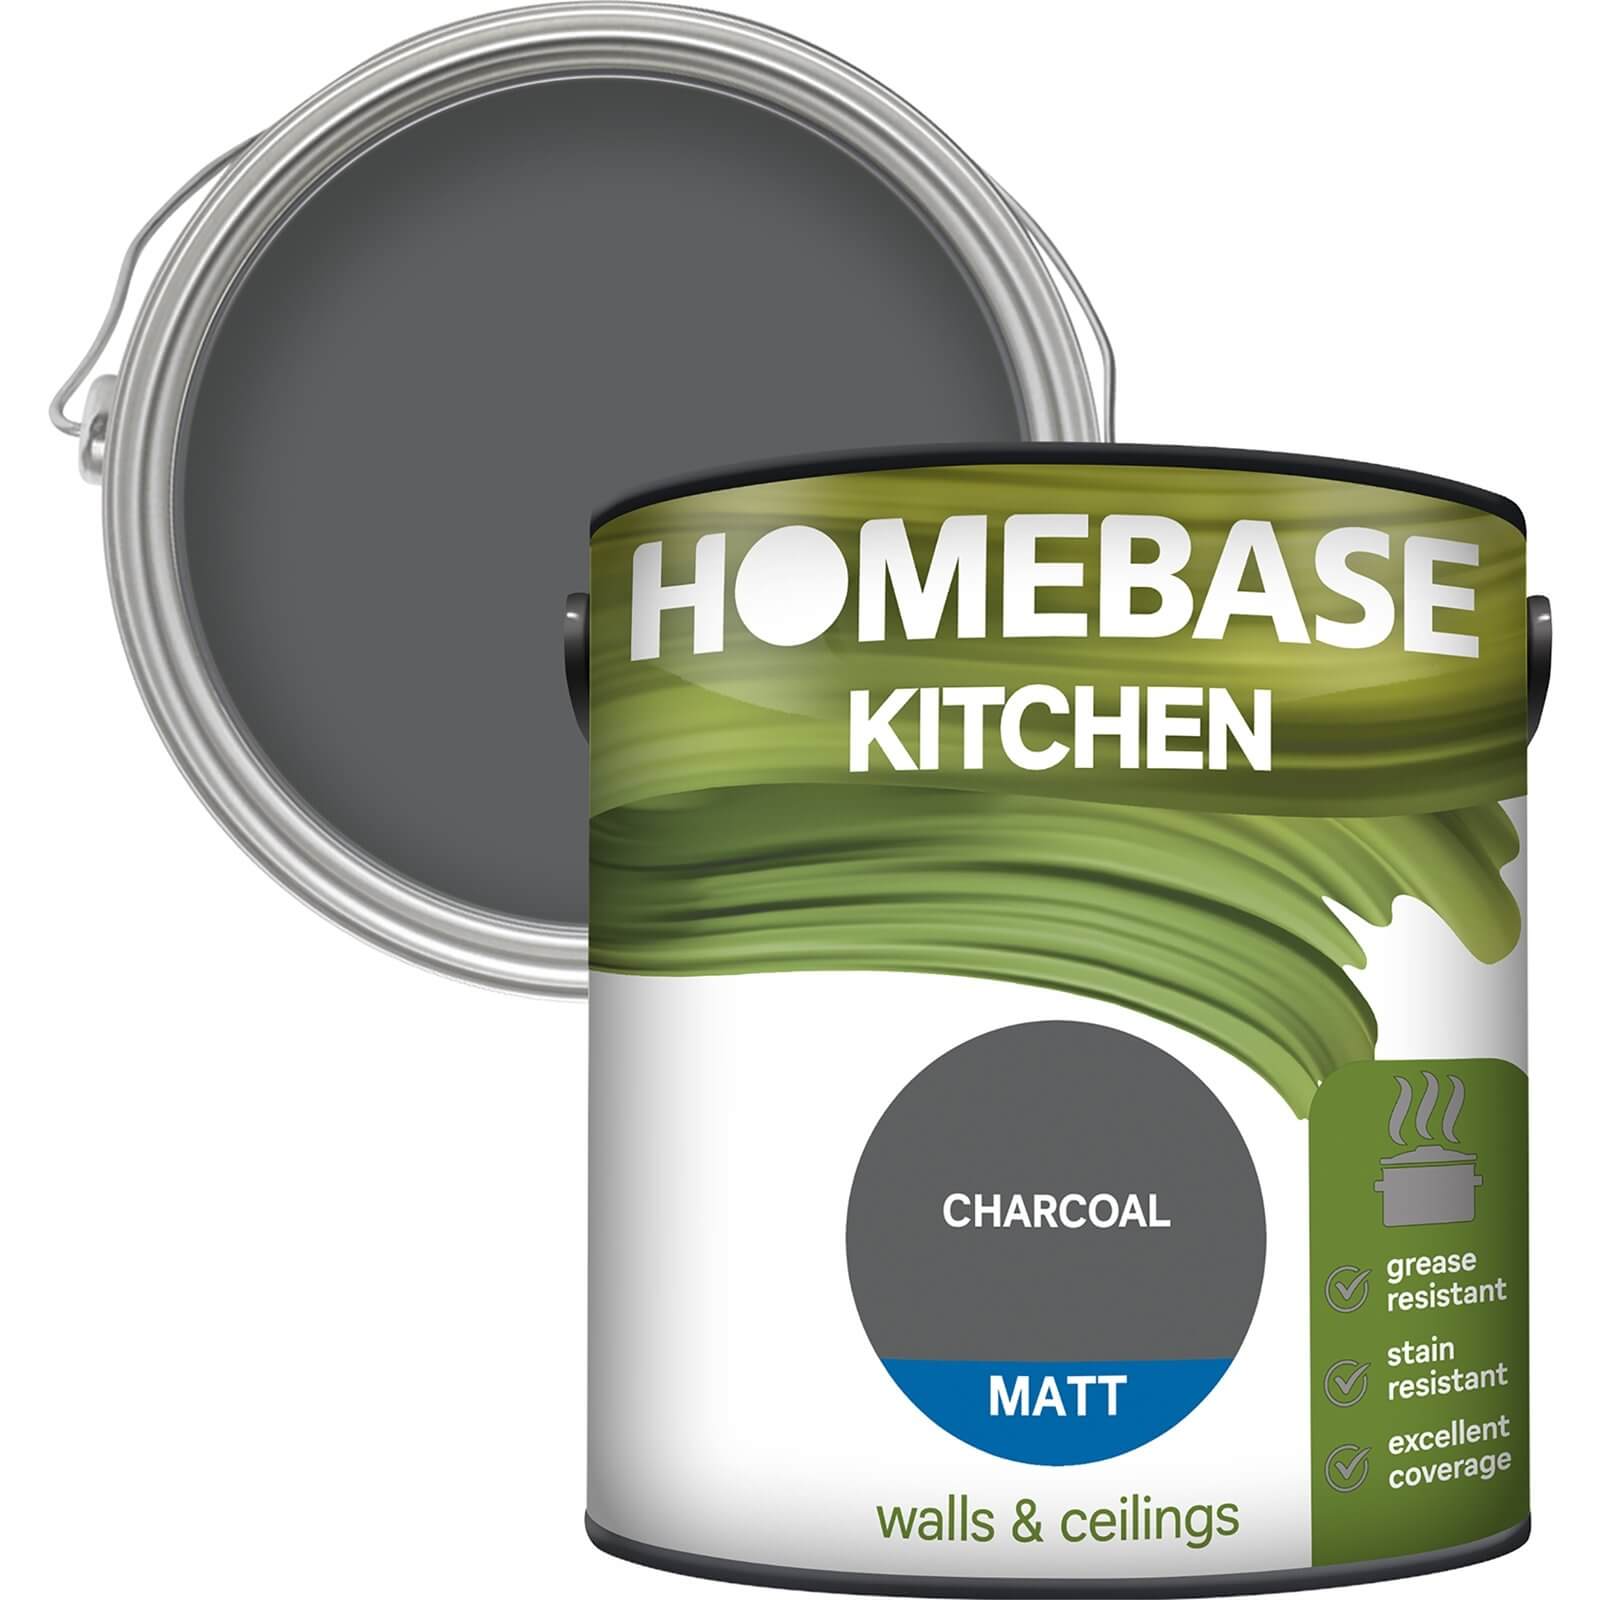 Homebase Kitchen Matt Paint - Charcoal 2.5L